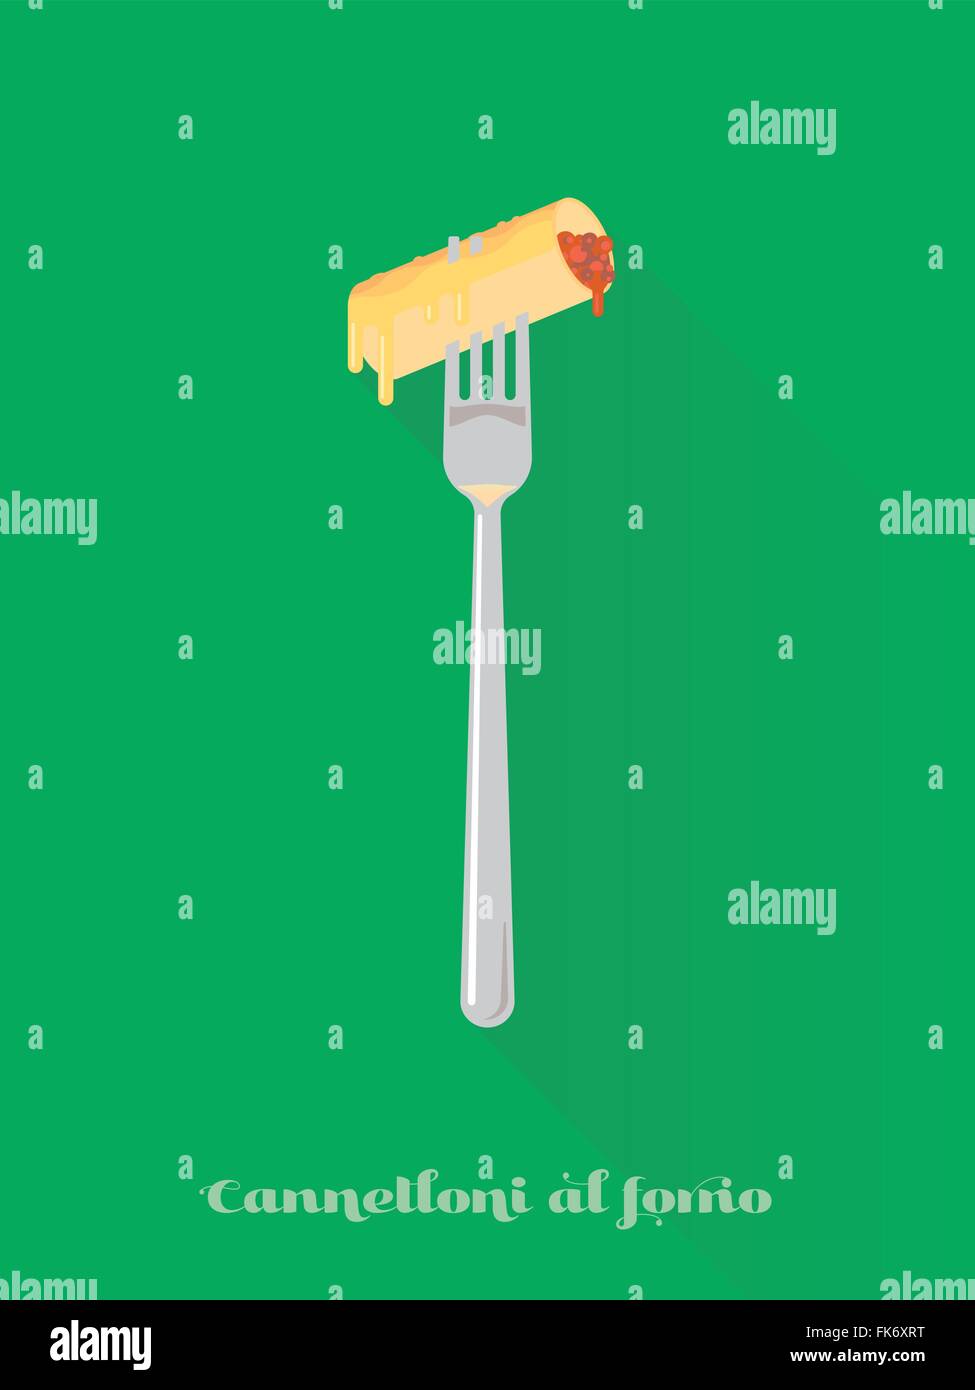 Modèle plat long shadow vector illustration d'une croûte au fromage pâtes cannelloni sur une fourchette Illustration de Vecteur